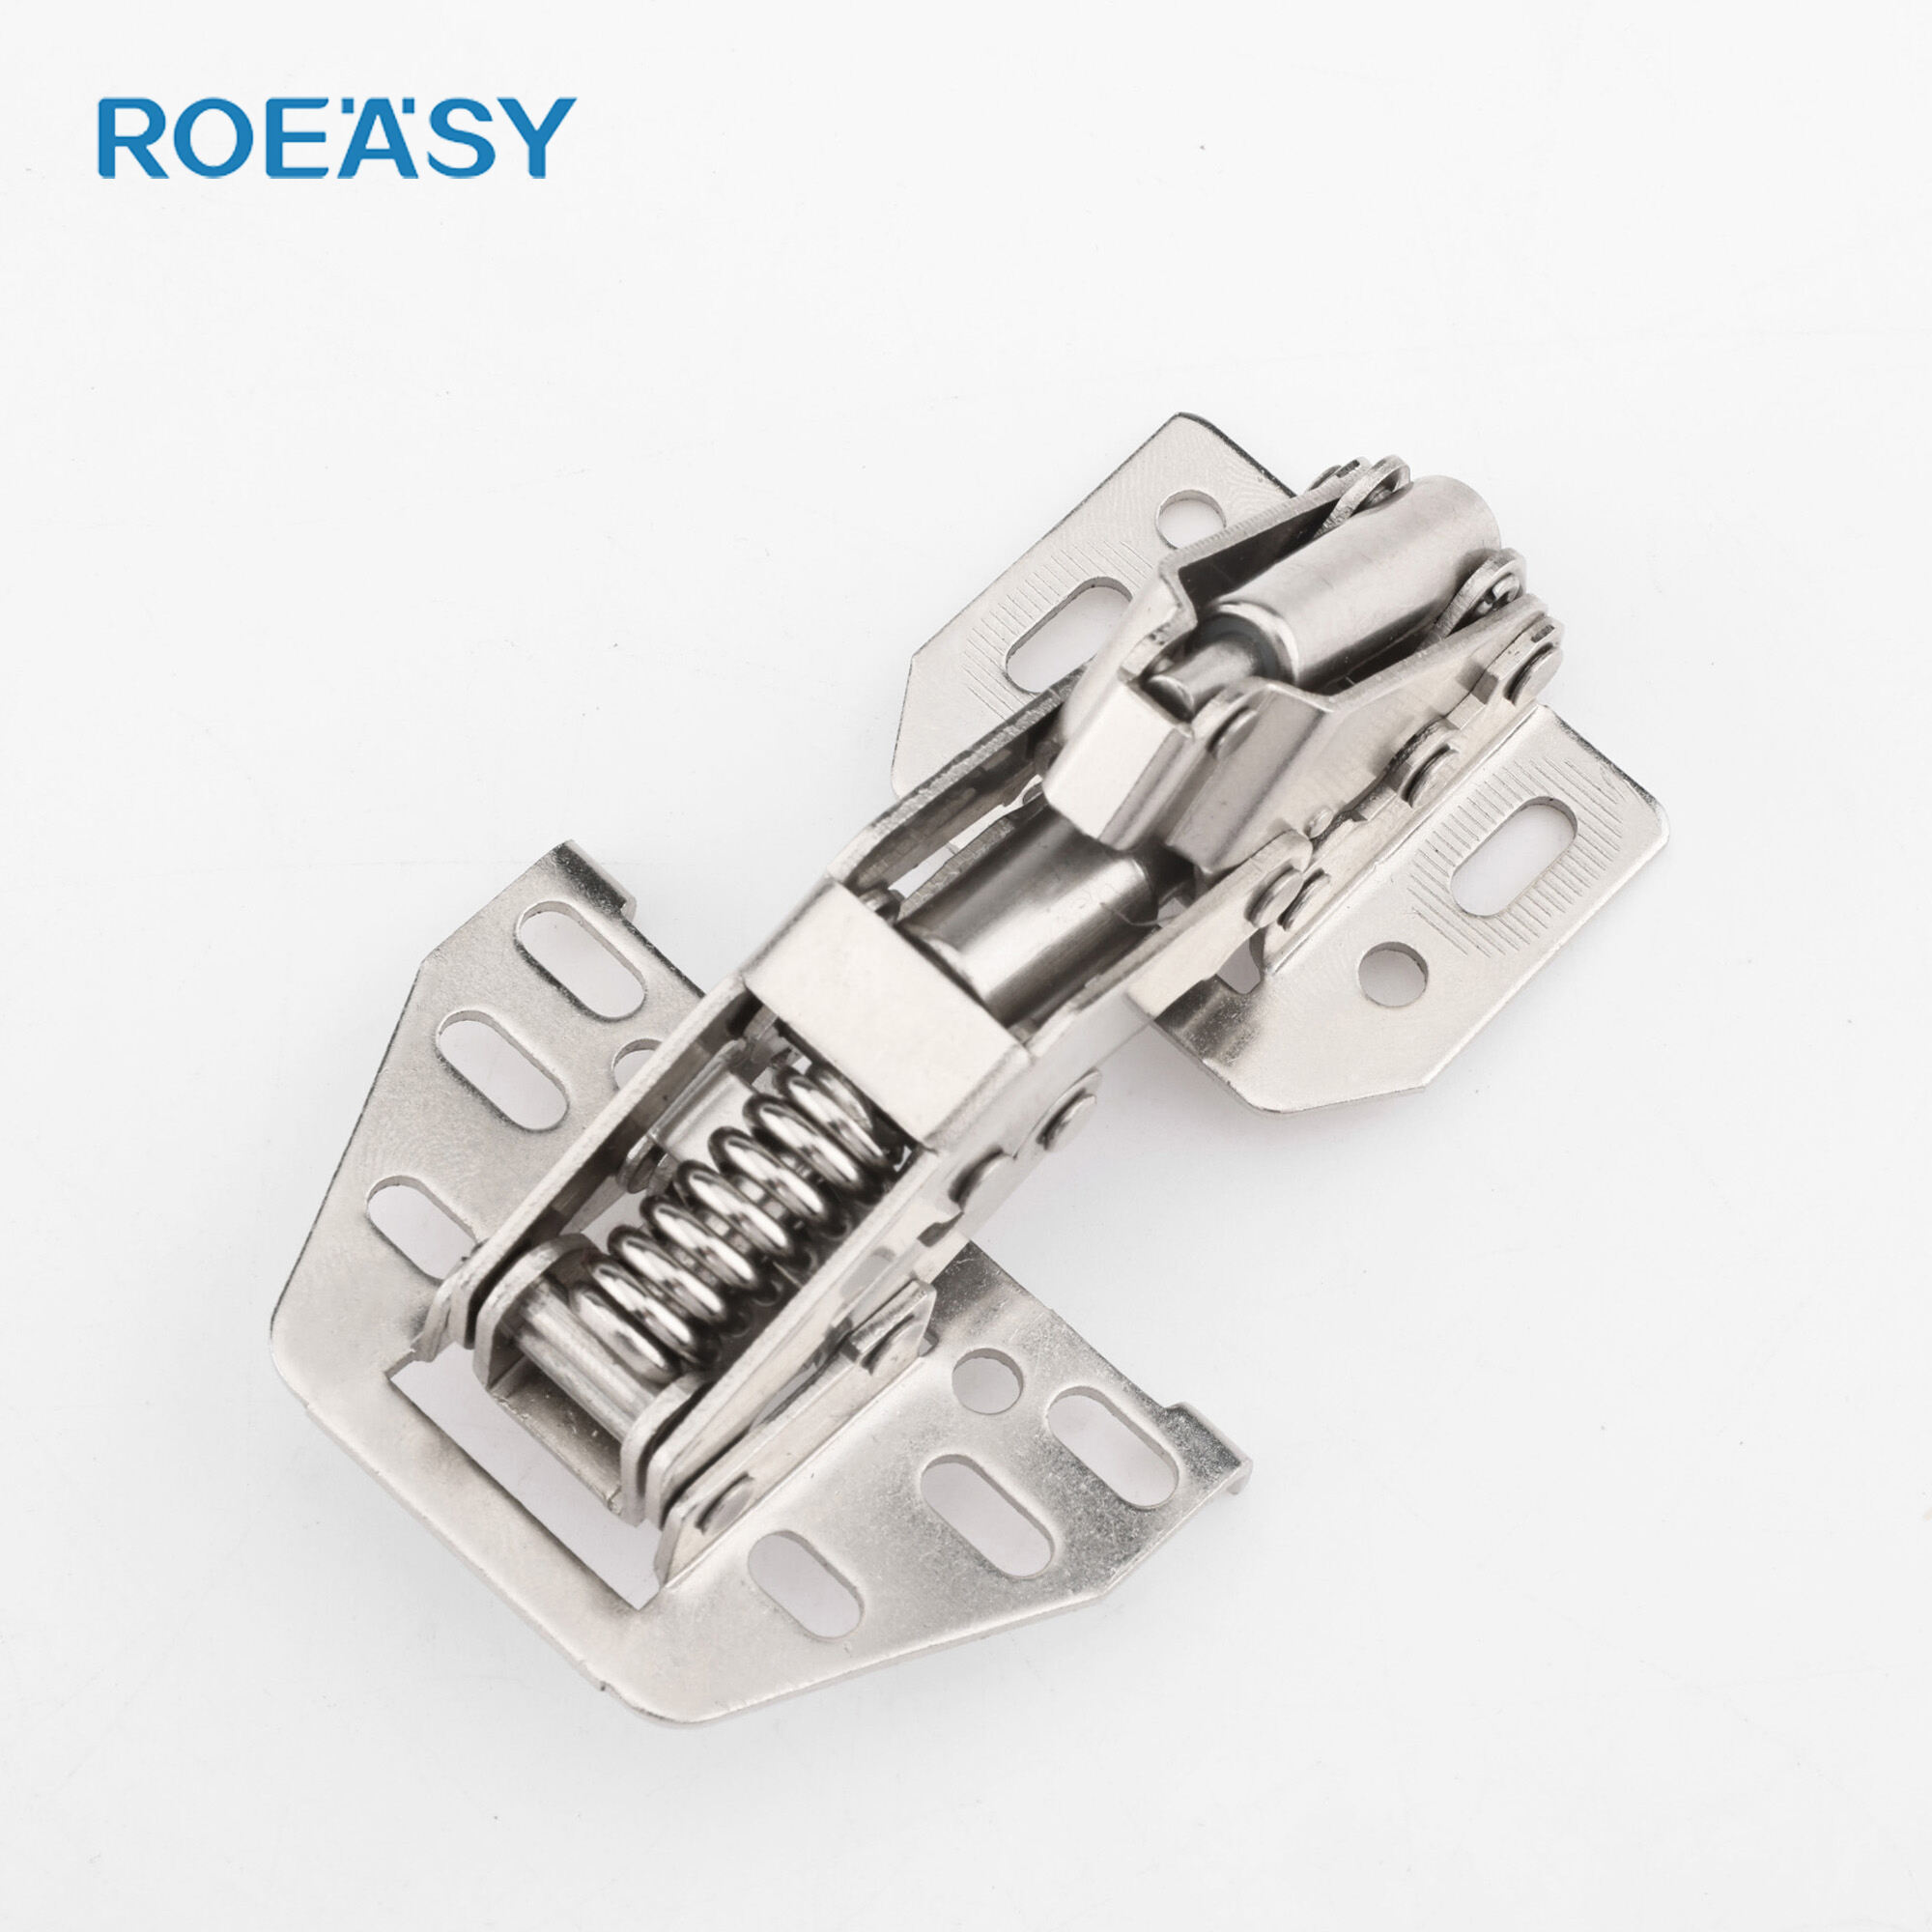 يتم تثبيت Roeasy FH-004S على مفصل زنبركي بدرجة خاصة غير قابلة للفصل بزاوية 90 درجة